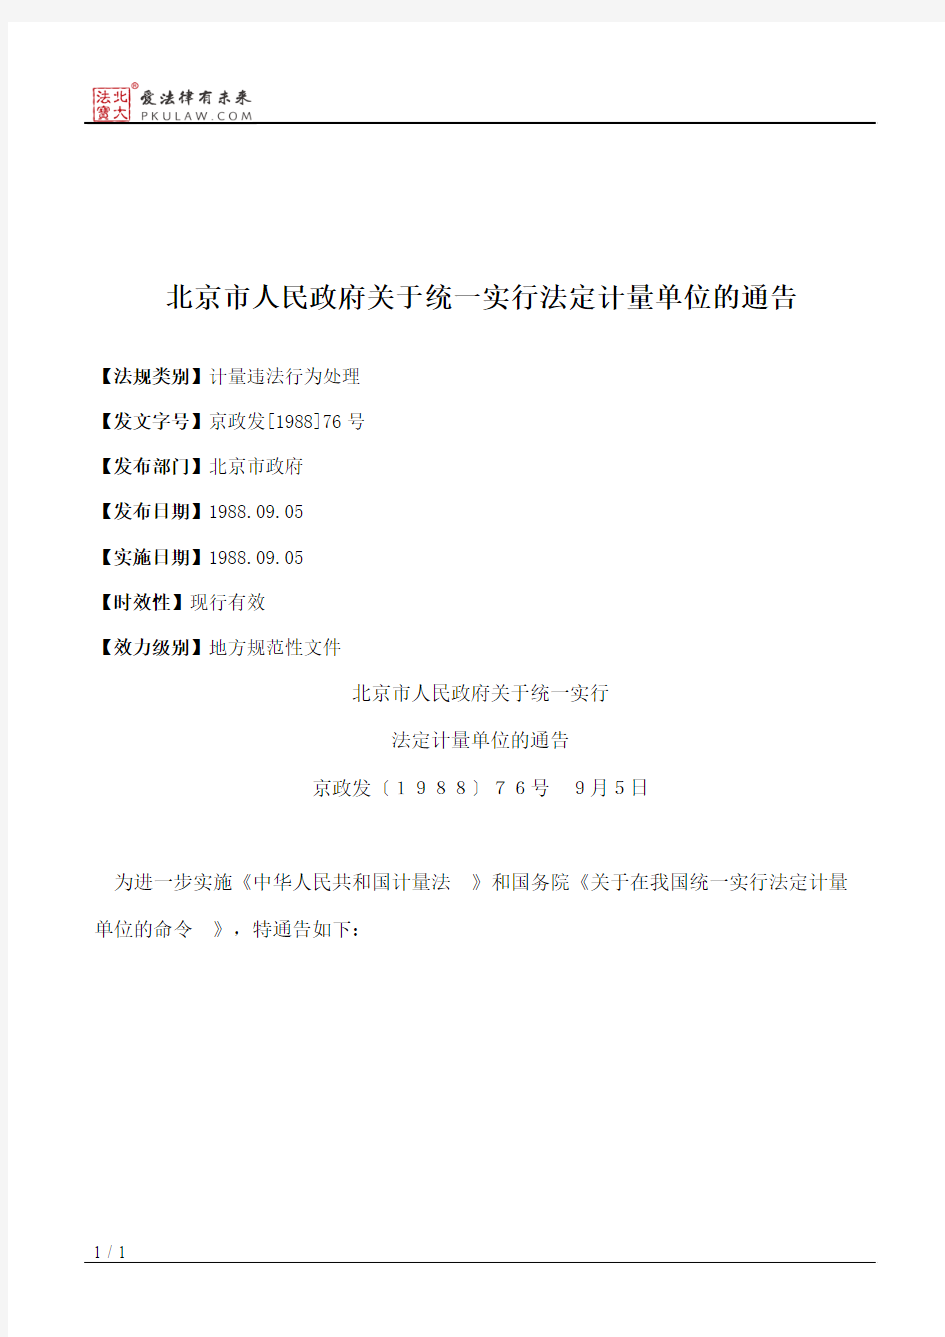 北京市人民政府关于统一实行法定计量单位的通告